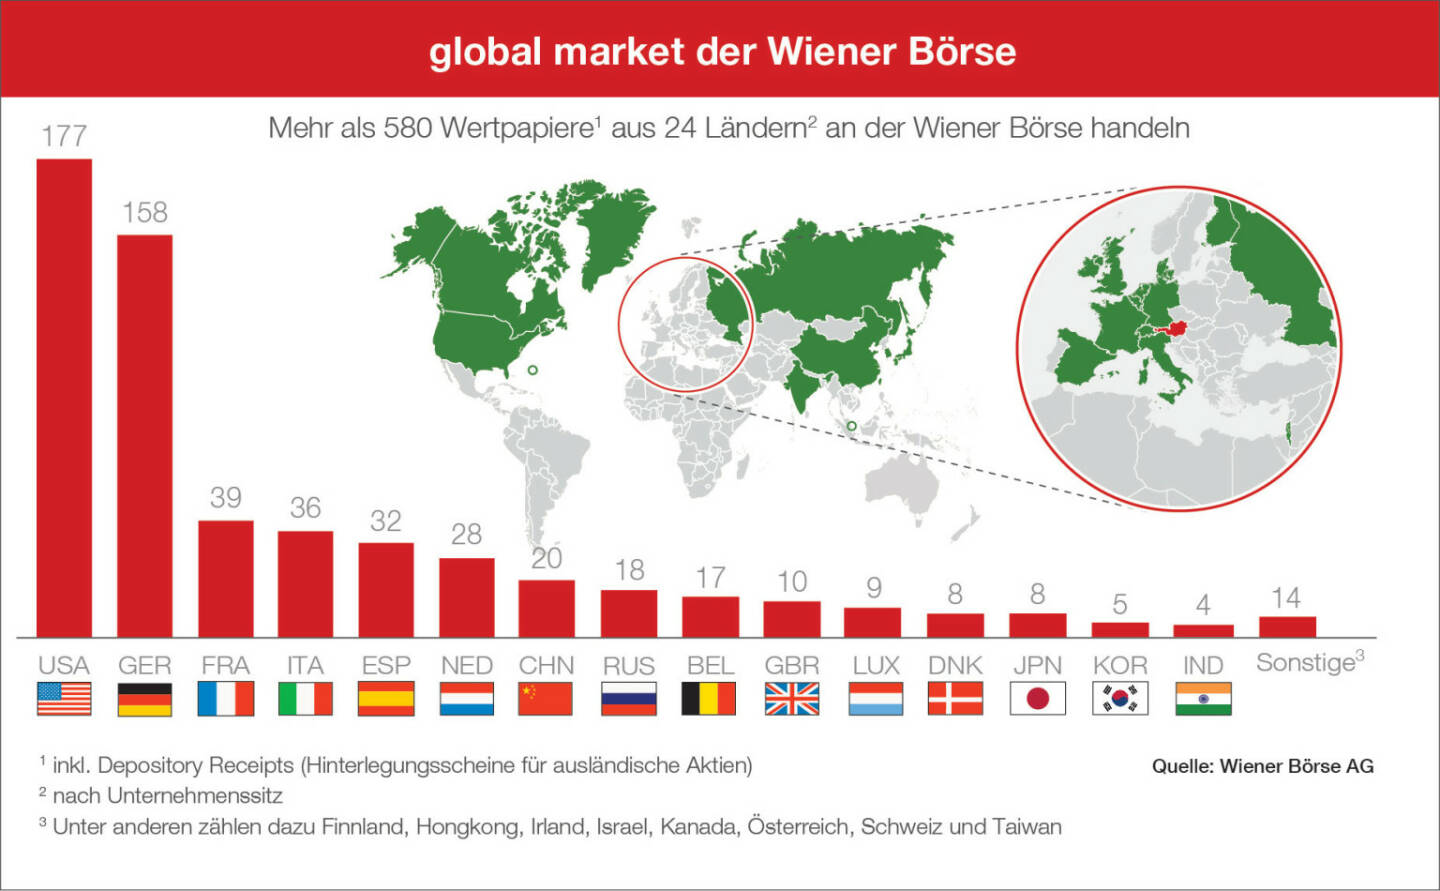 Wiener Börse: Global Market Erweiterung November 2018, Insgesamt sind damit an der Wiener Börse nun über 580 Wertpapiere aus 24 Ländern handelbar. Credit: Wiener Börse